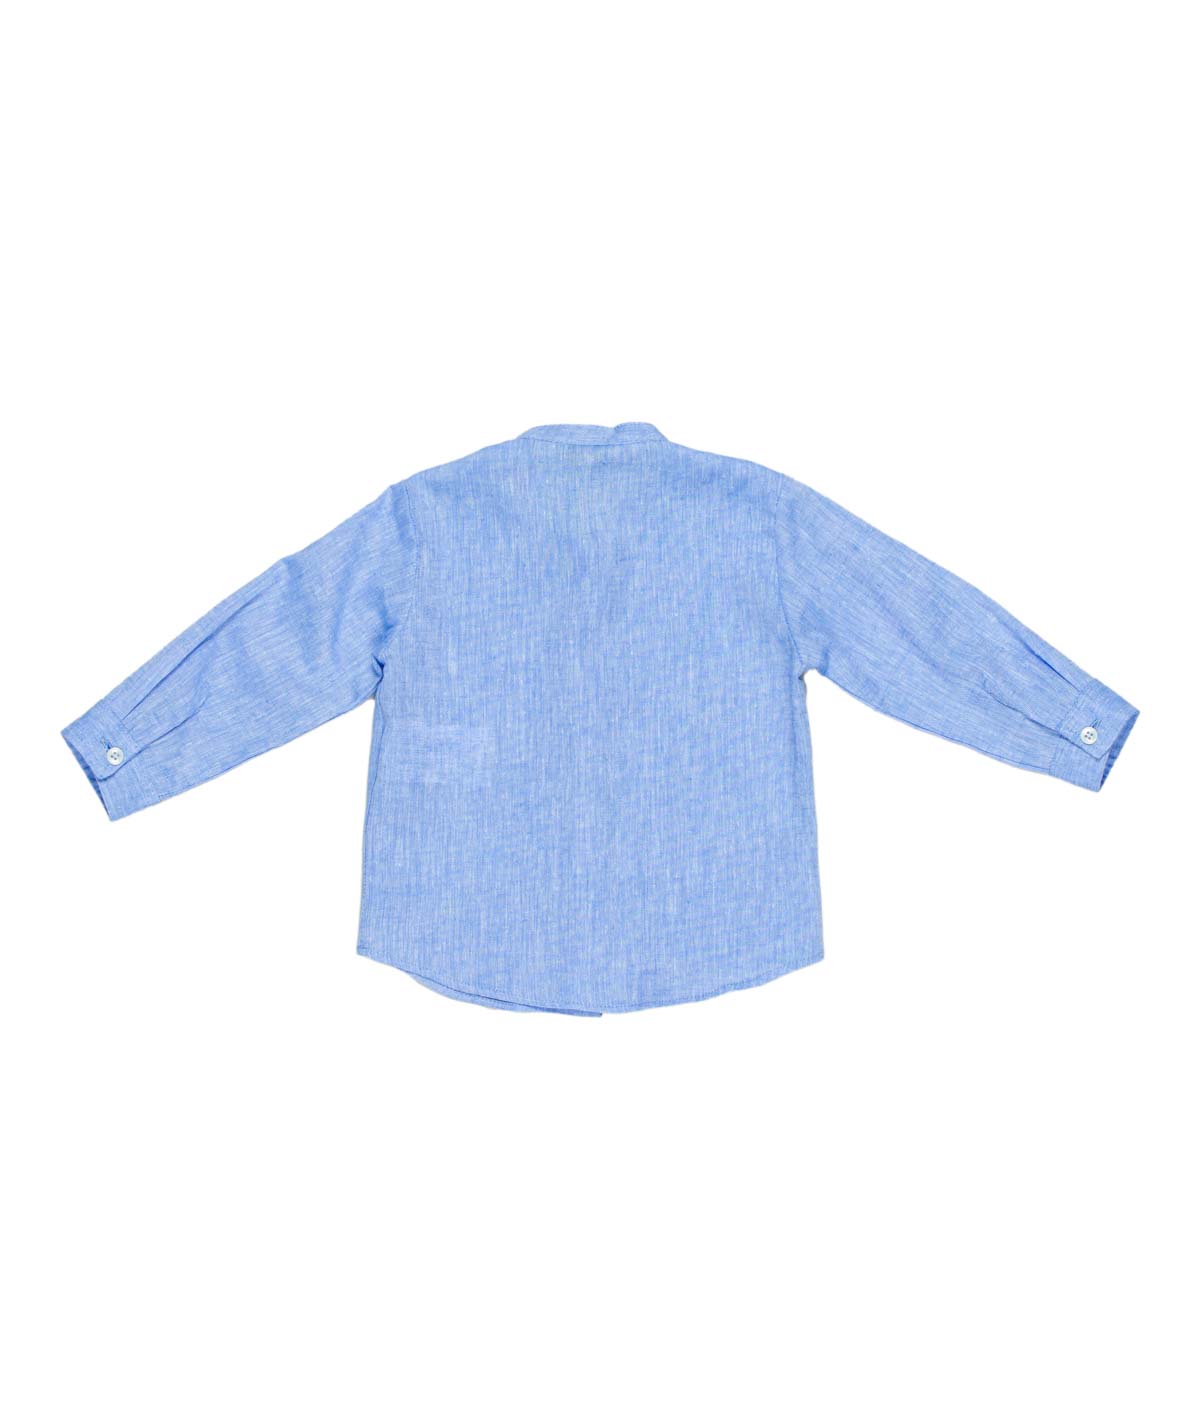 MANUEL RITZ Guru baby linen blend shirt in light blue melange